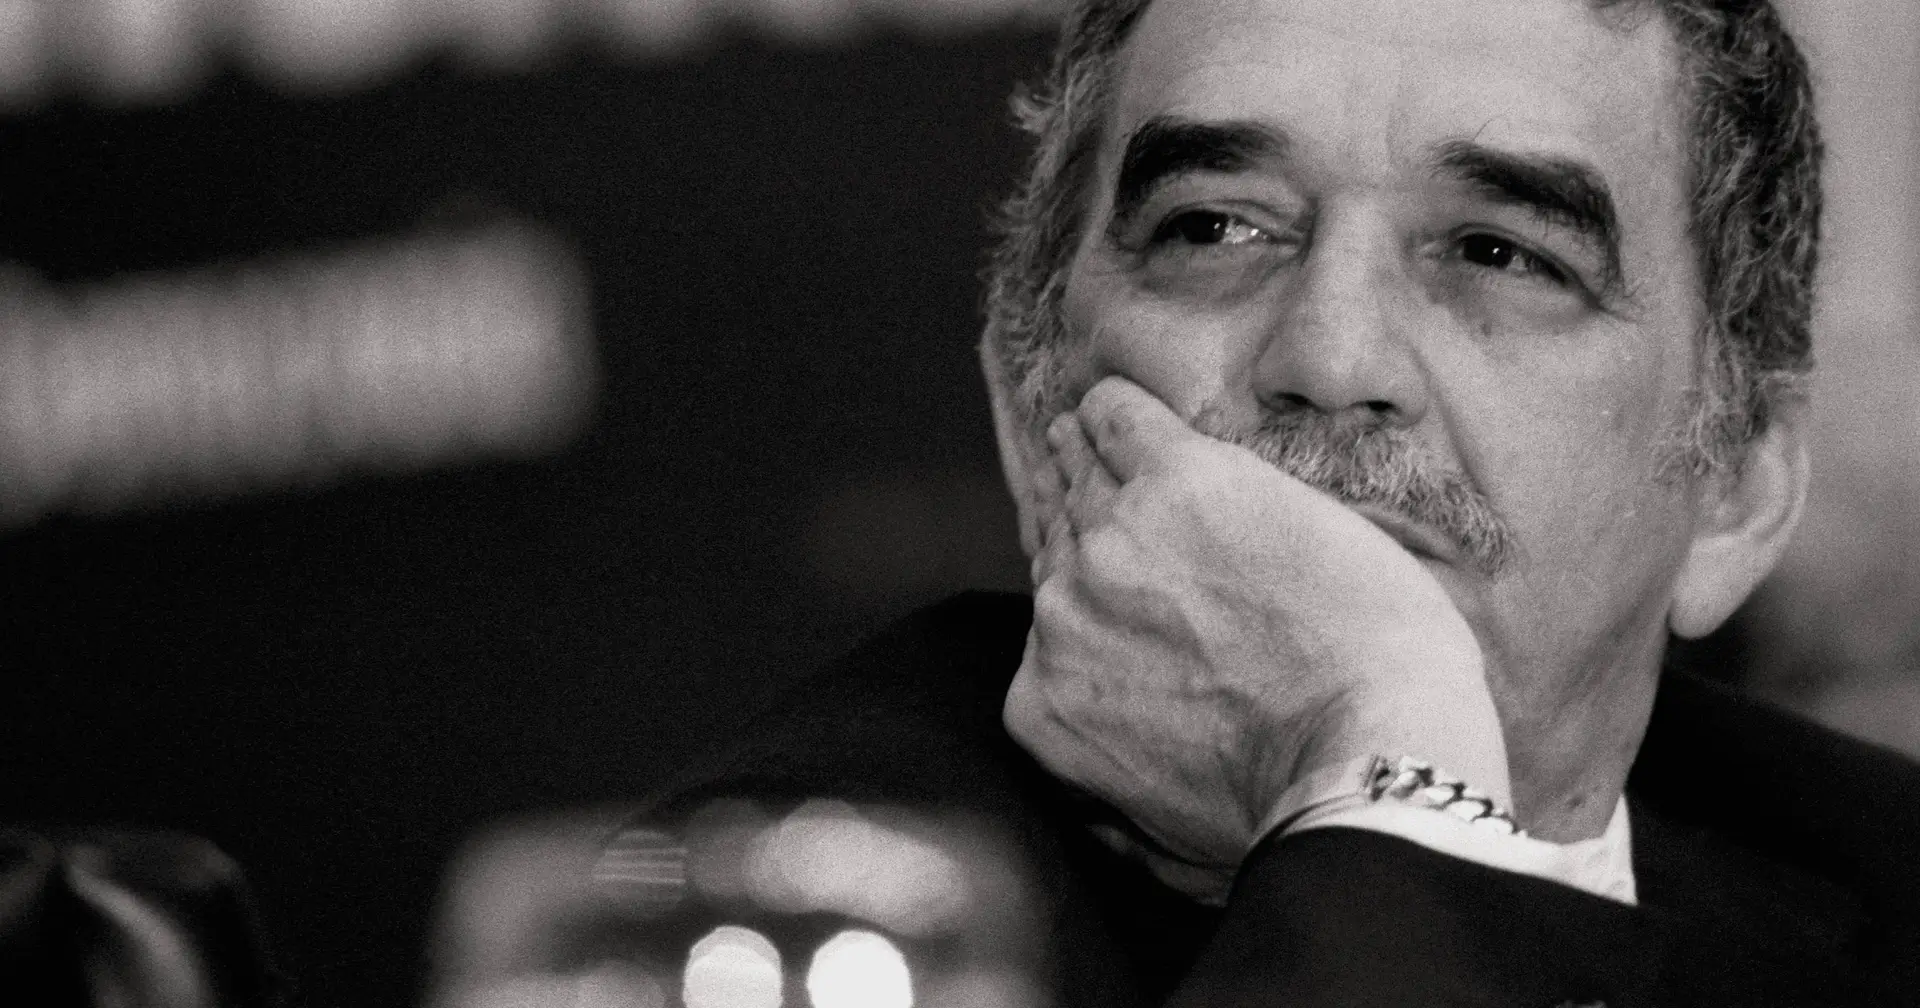 Unas 150 cartas recibidas de Gabriel García Márquez encontradas por la familia en una caja